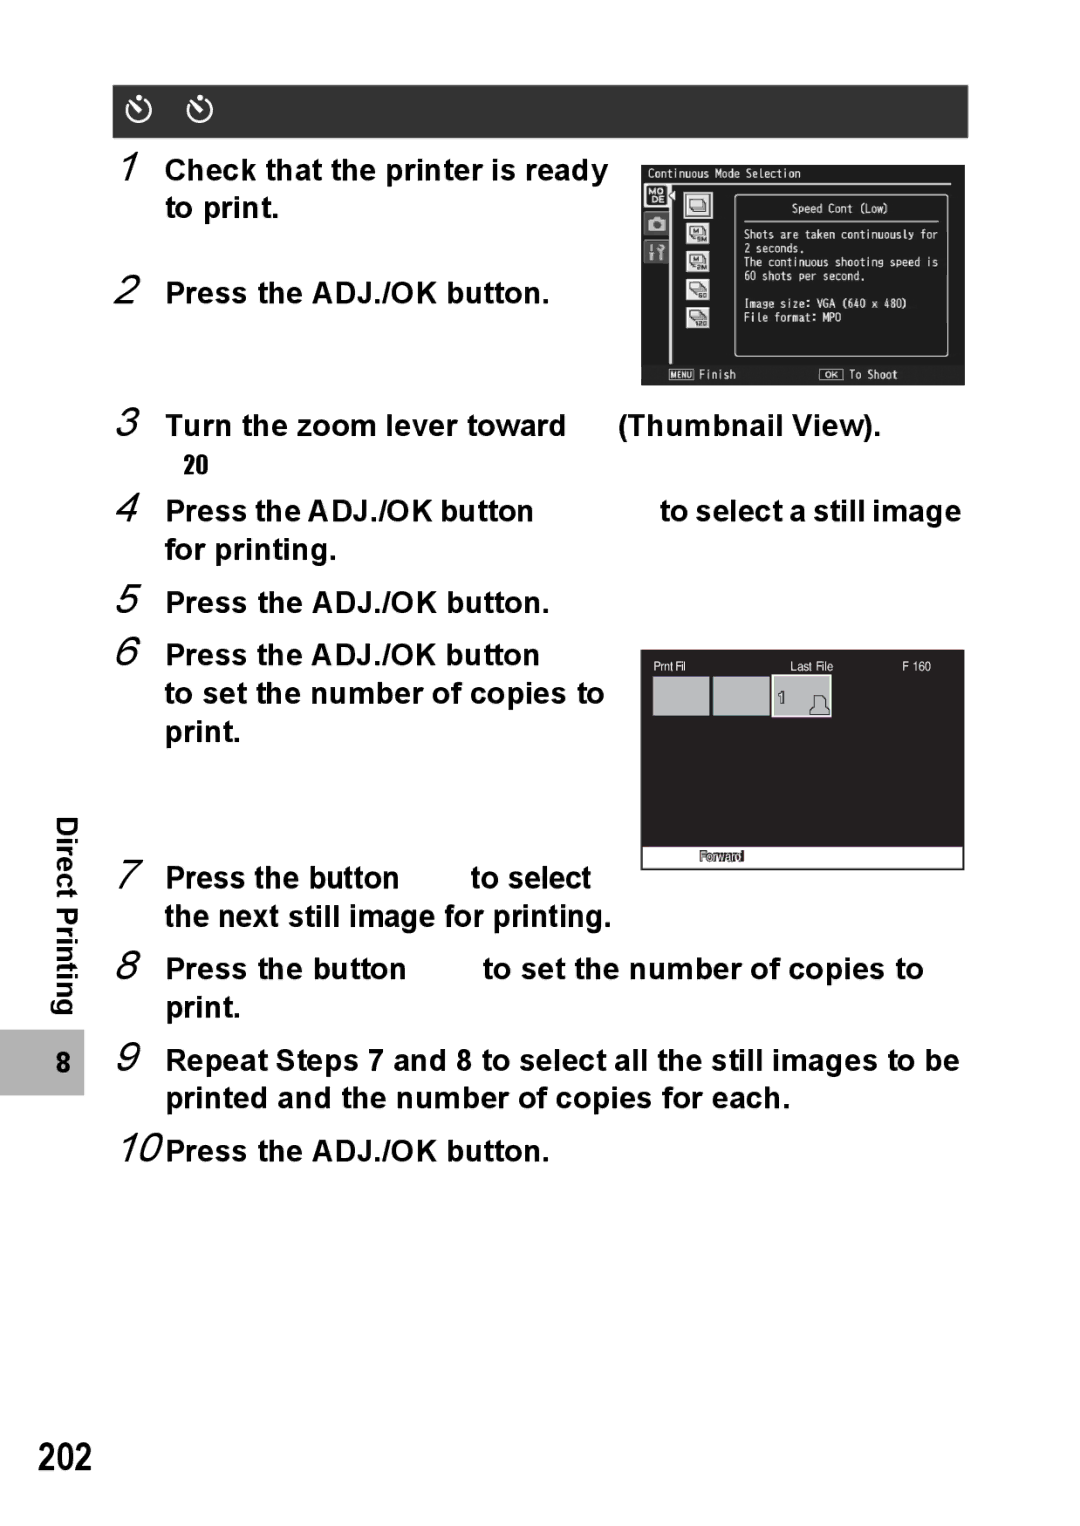 Samsung CX2 manual 202, Printing Several Still Images 